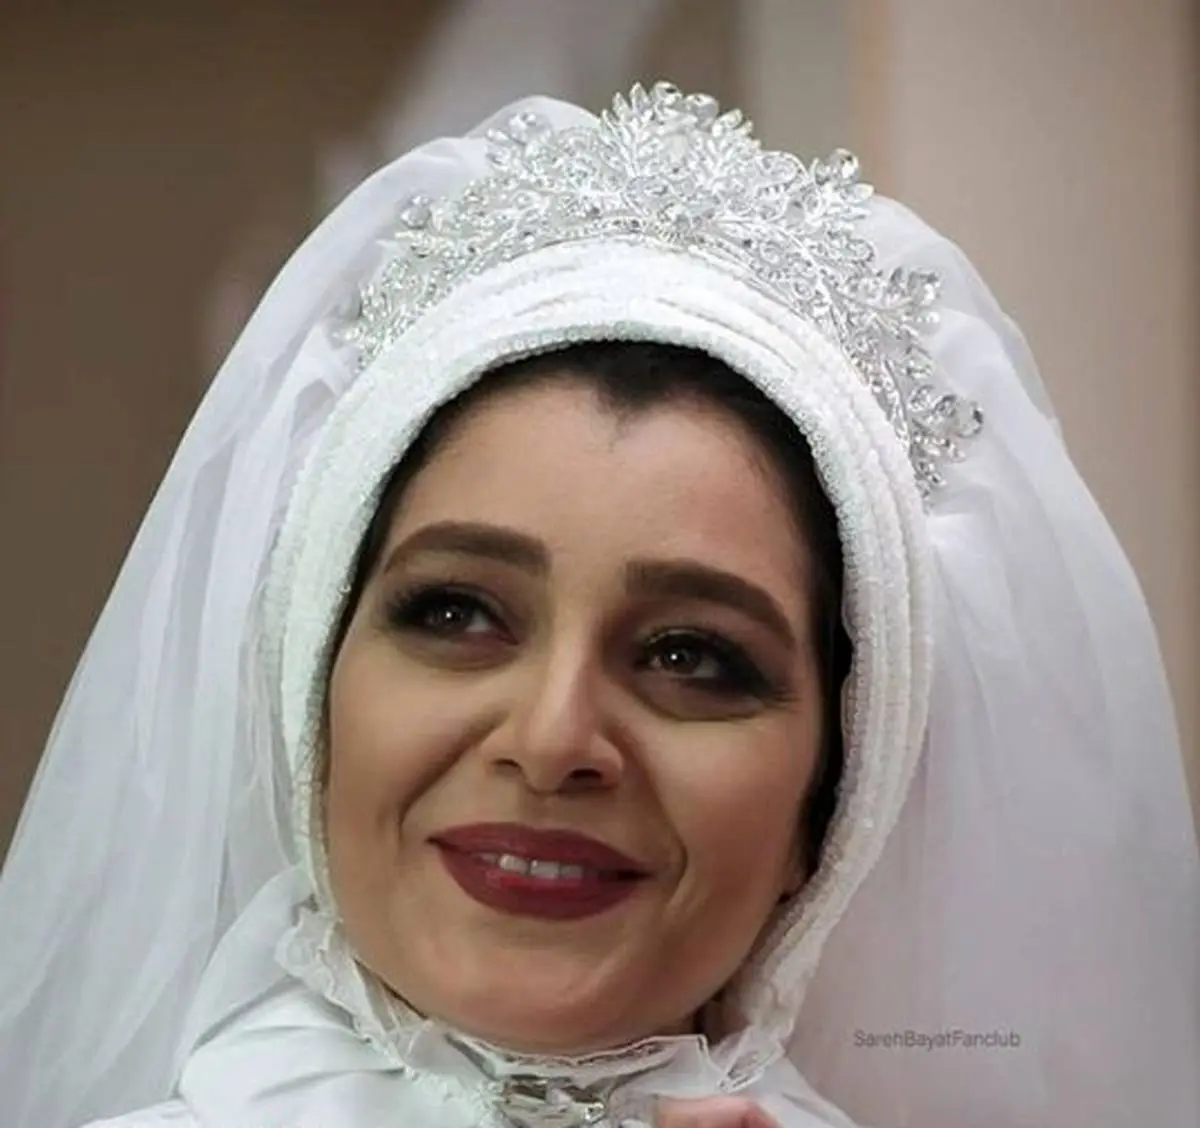 مراسم عروسی خاص ساره بیات برگزار شد | بریز و بپاش شاه داماد میلیاردر برای خواهرزن رضا قوچی